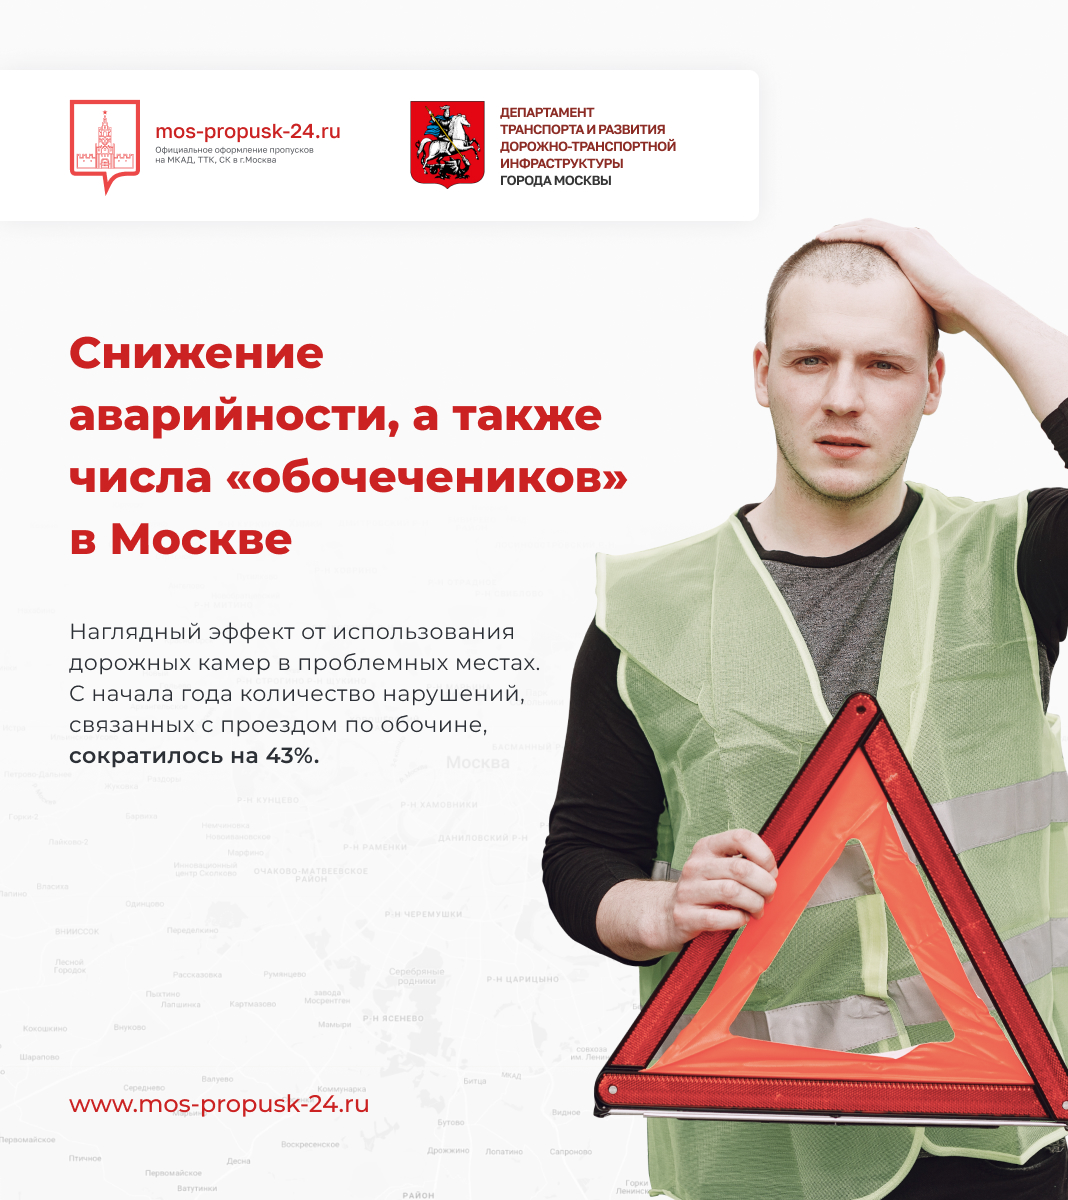 Снижение аварийности, а также числа «обочечеников» в Москве